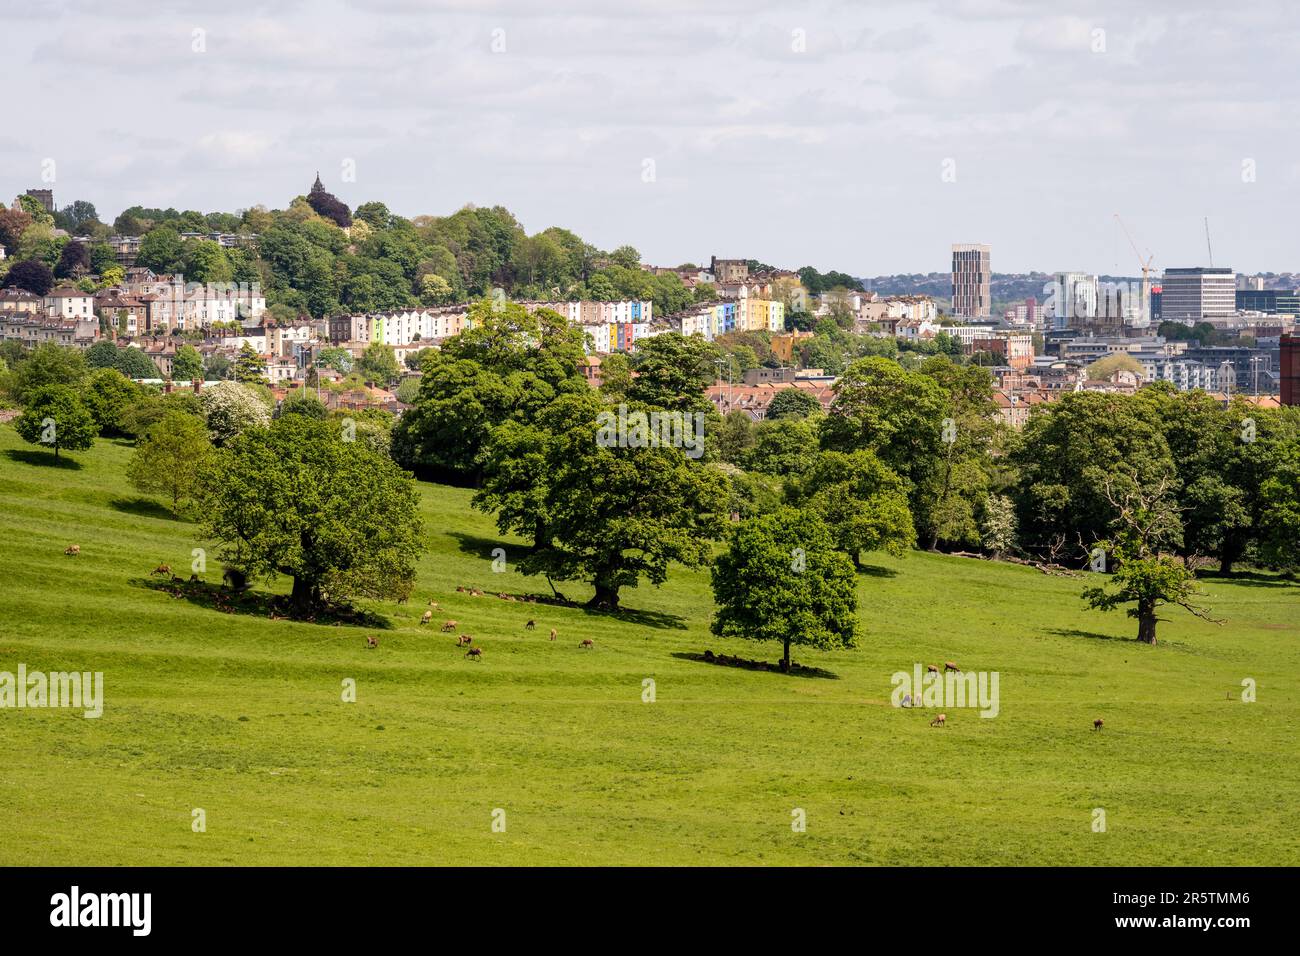 Hirsche grasen auf der landschaftlich gestalteten Parklandschaft am Ashton Court in Bristol, mit dem Stadtbild aus Häusern und Hochhäusern dahinter. Stockfoto